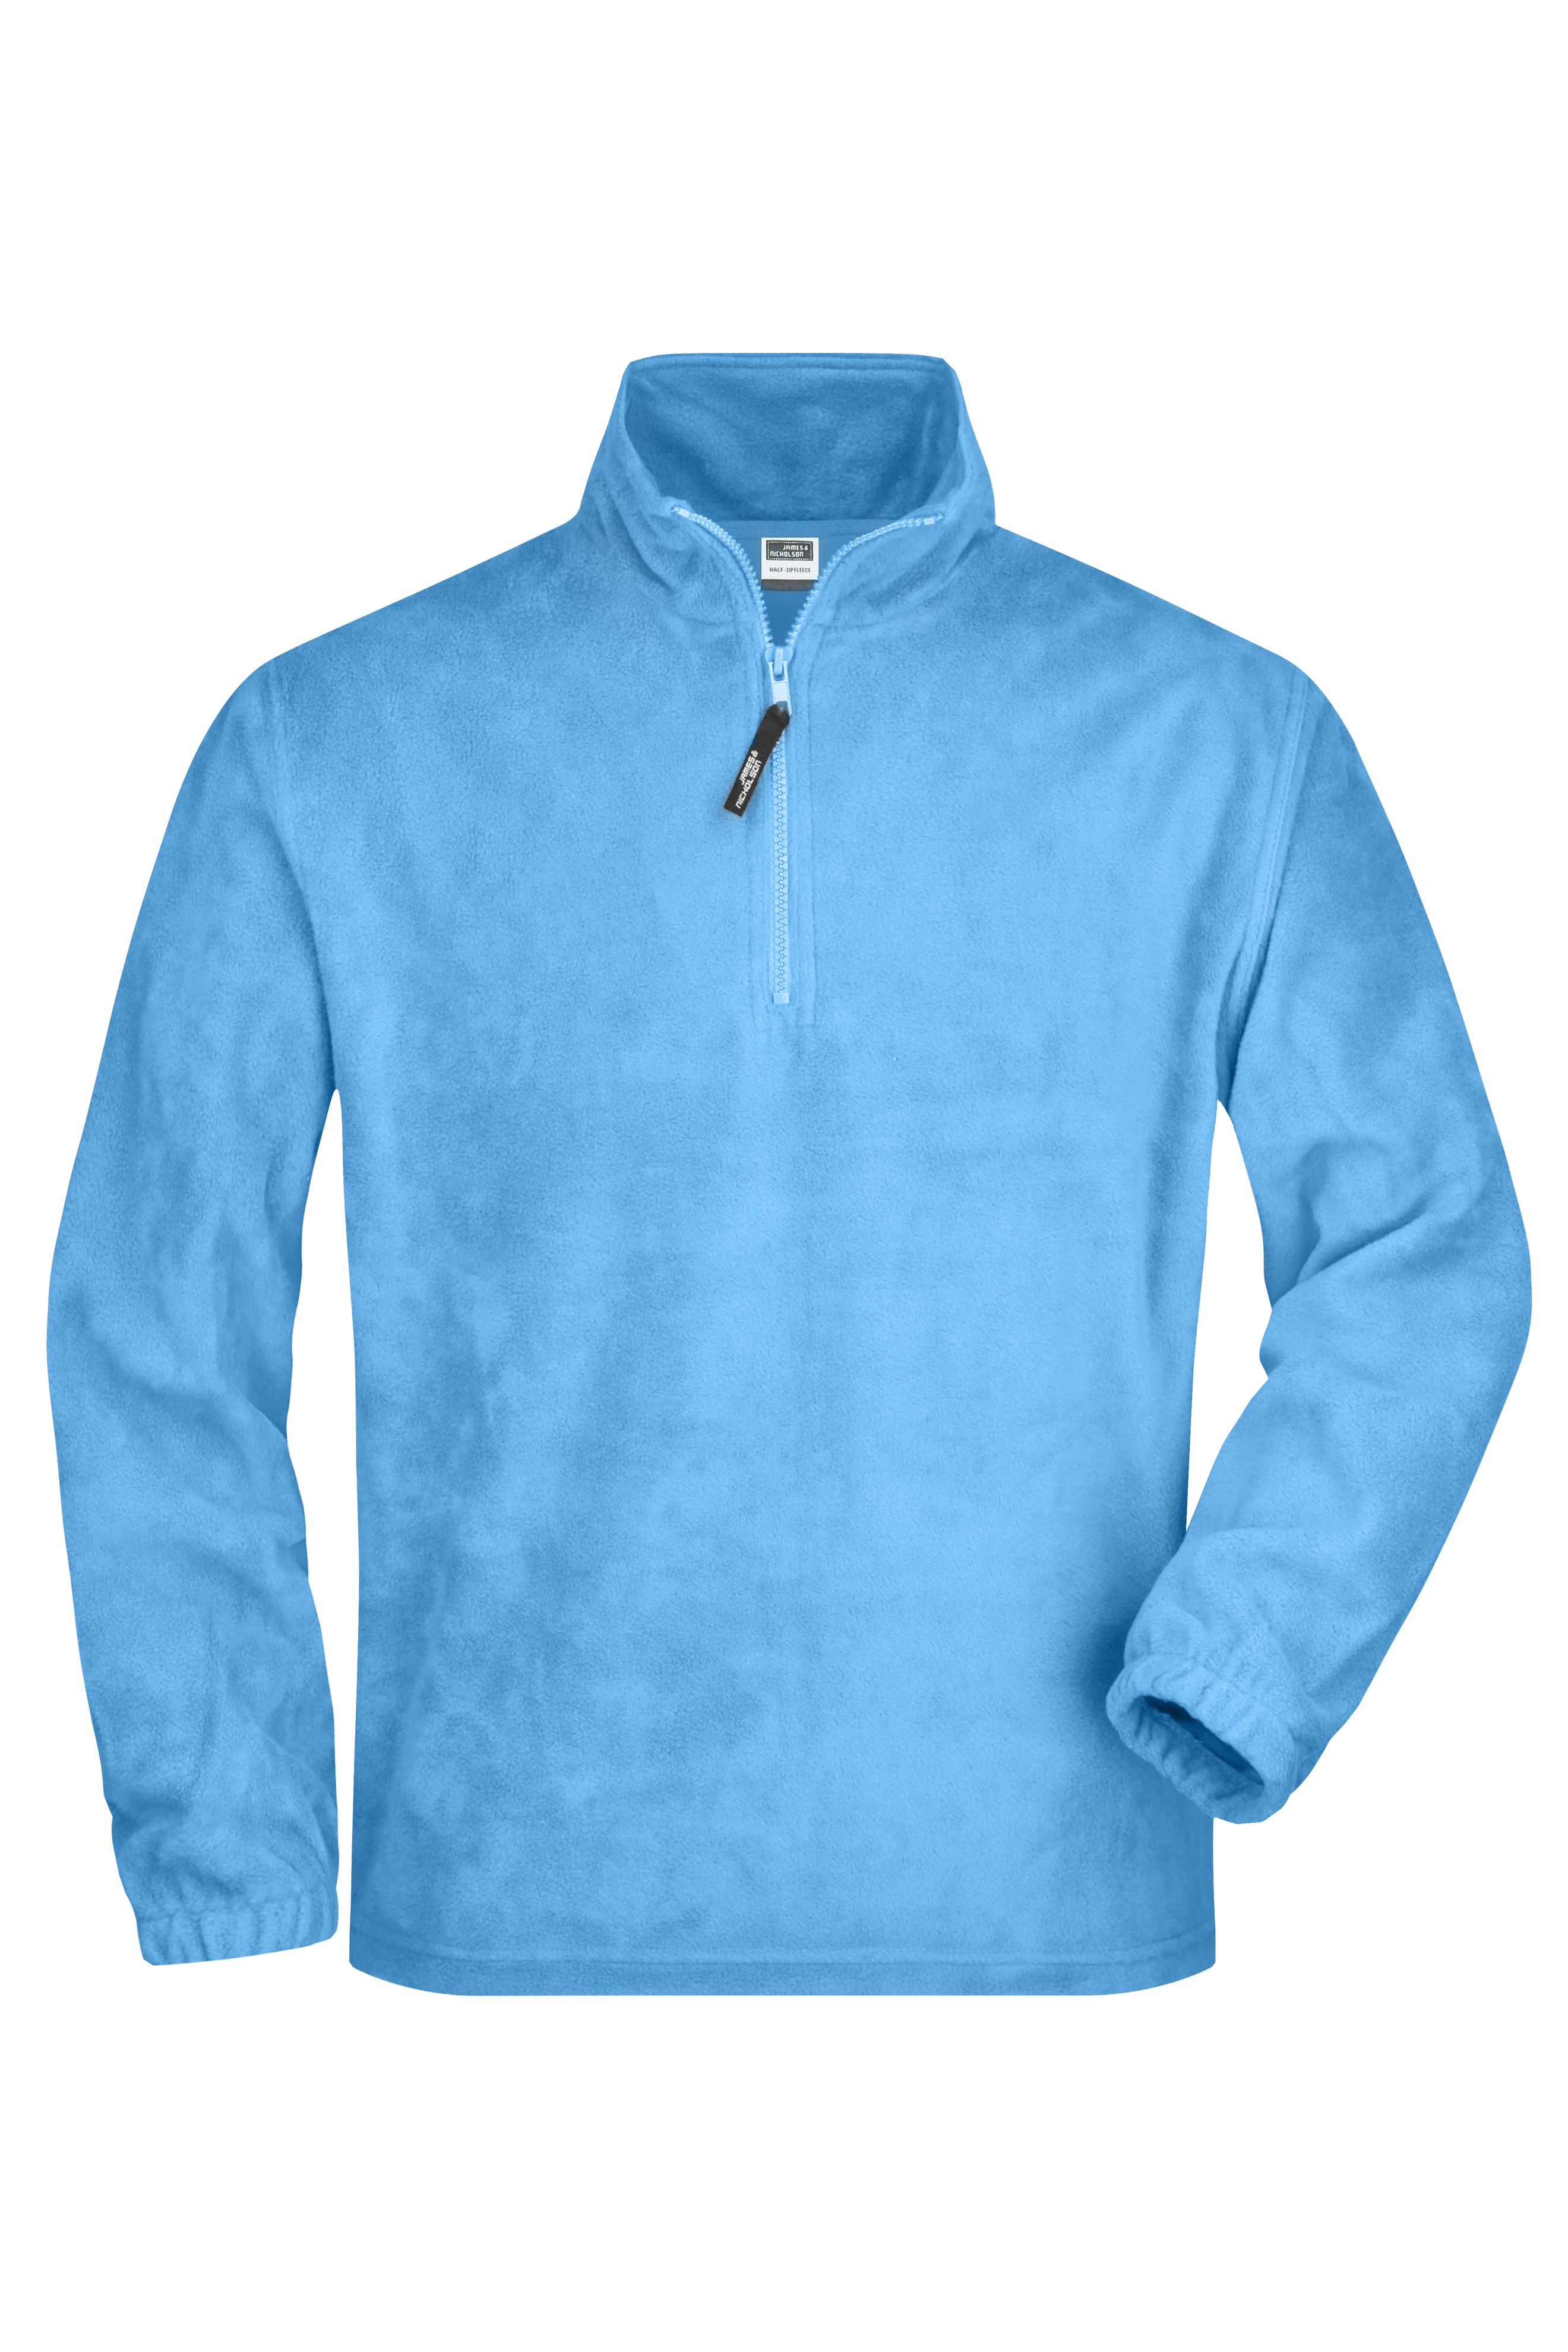 Unisex Half-Zip Fleece Light-blue-Daiber